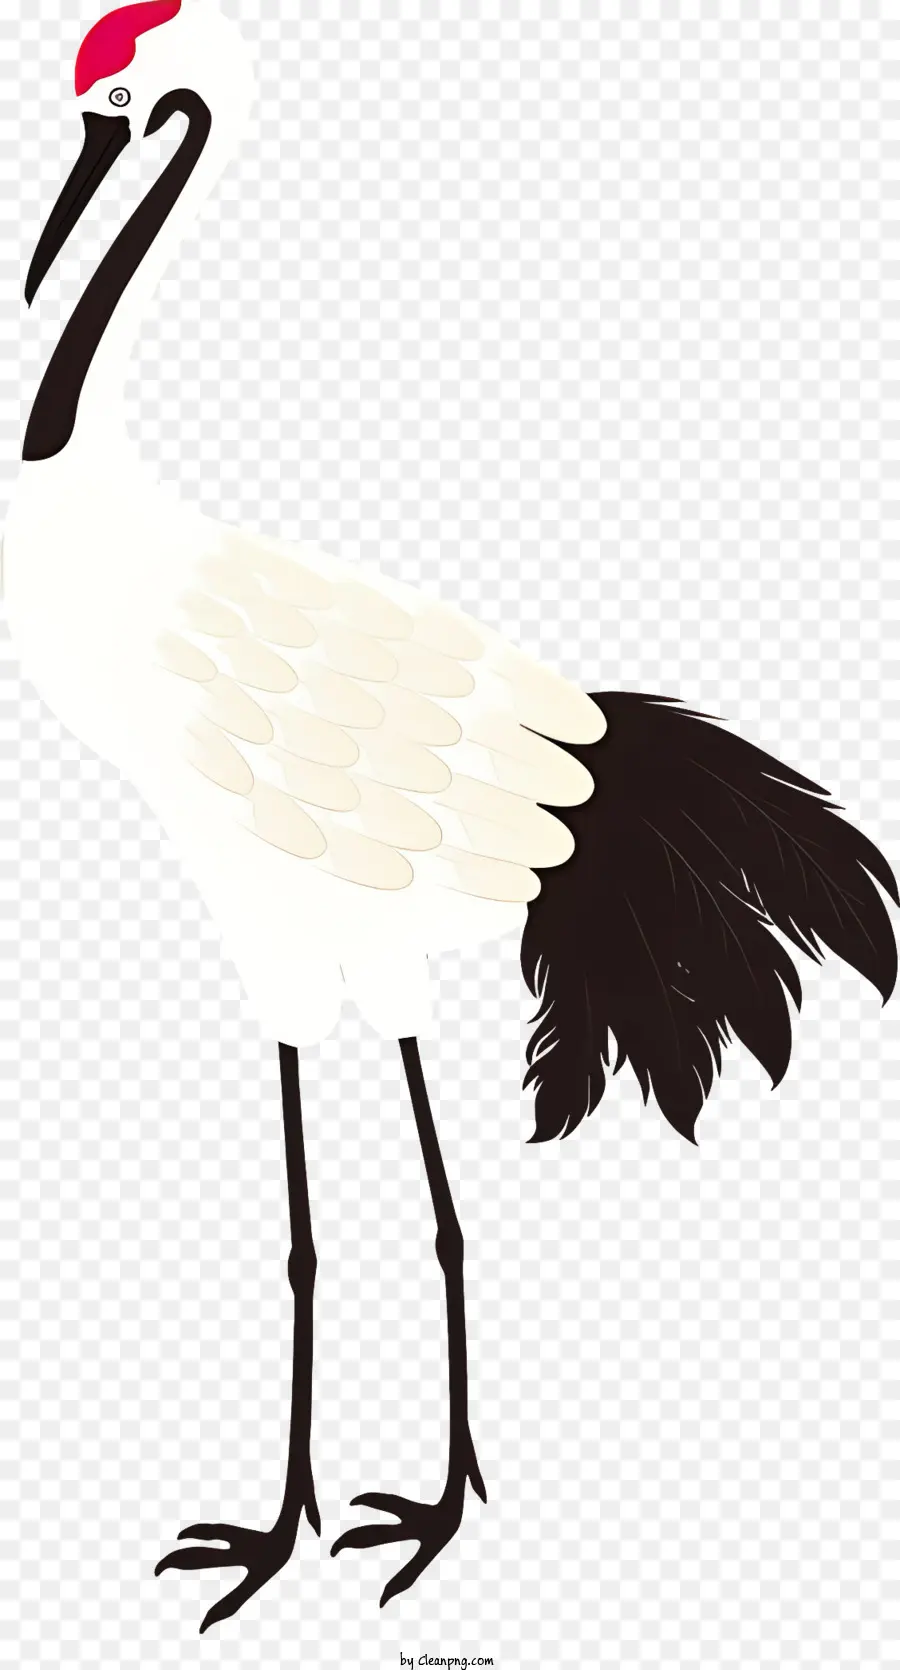 piume nere a becco lungo uccello corpo sottile in piedi sulle gambe - Uccello bianco e nero con becco aperto